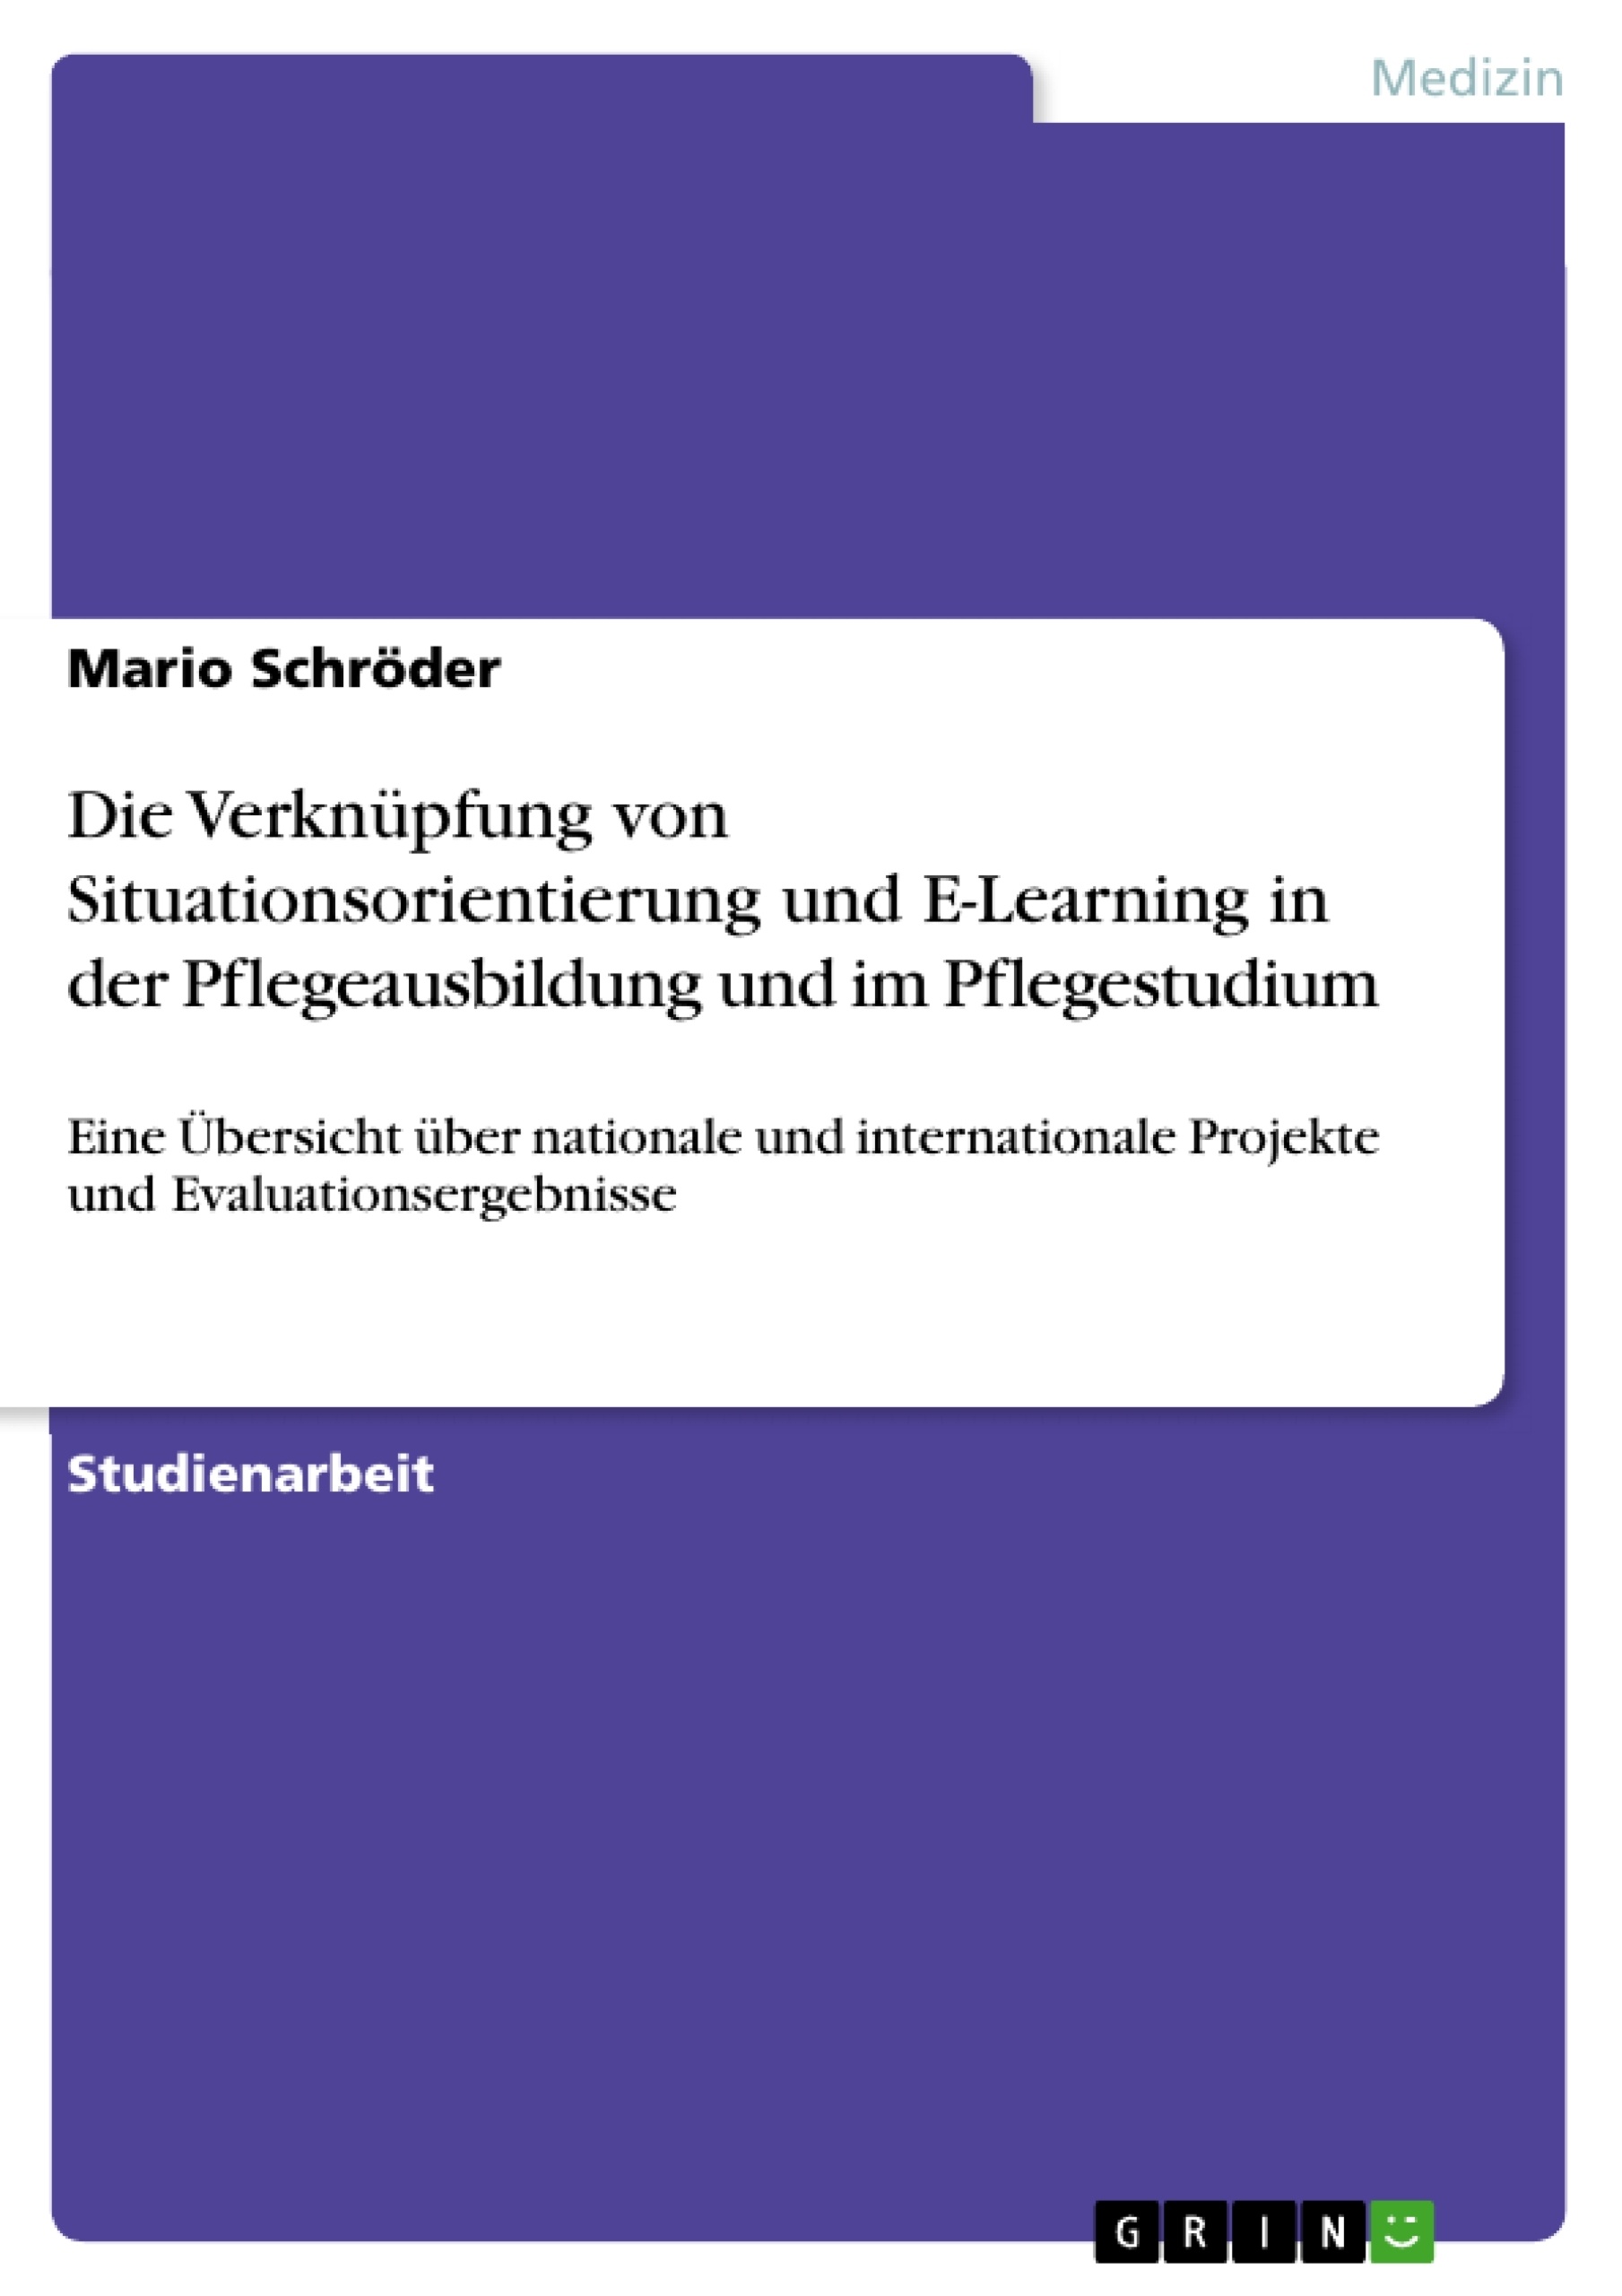 Titre: Die Verknüpfung von Situationsorientierung und E-Learning in der Pflegeausbildung und im Pflegestudium